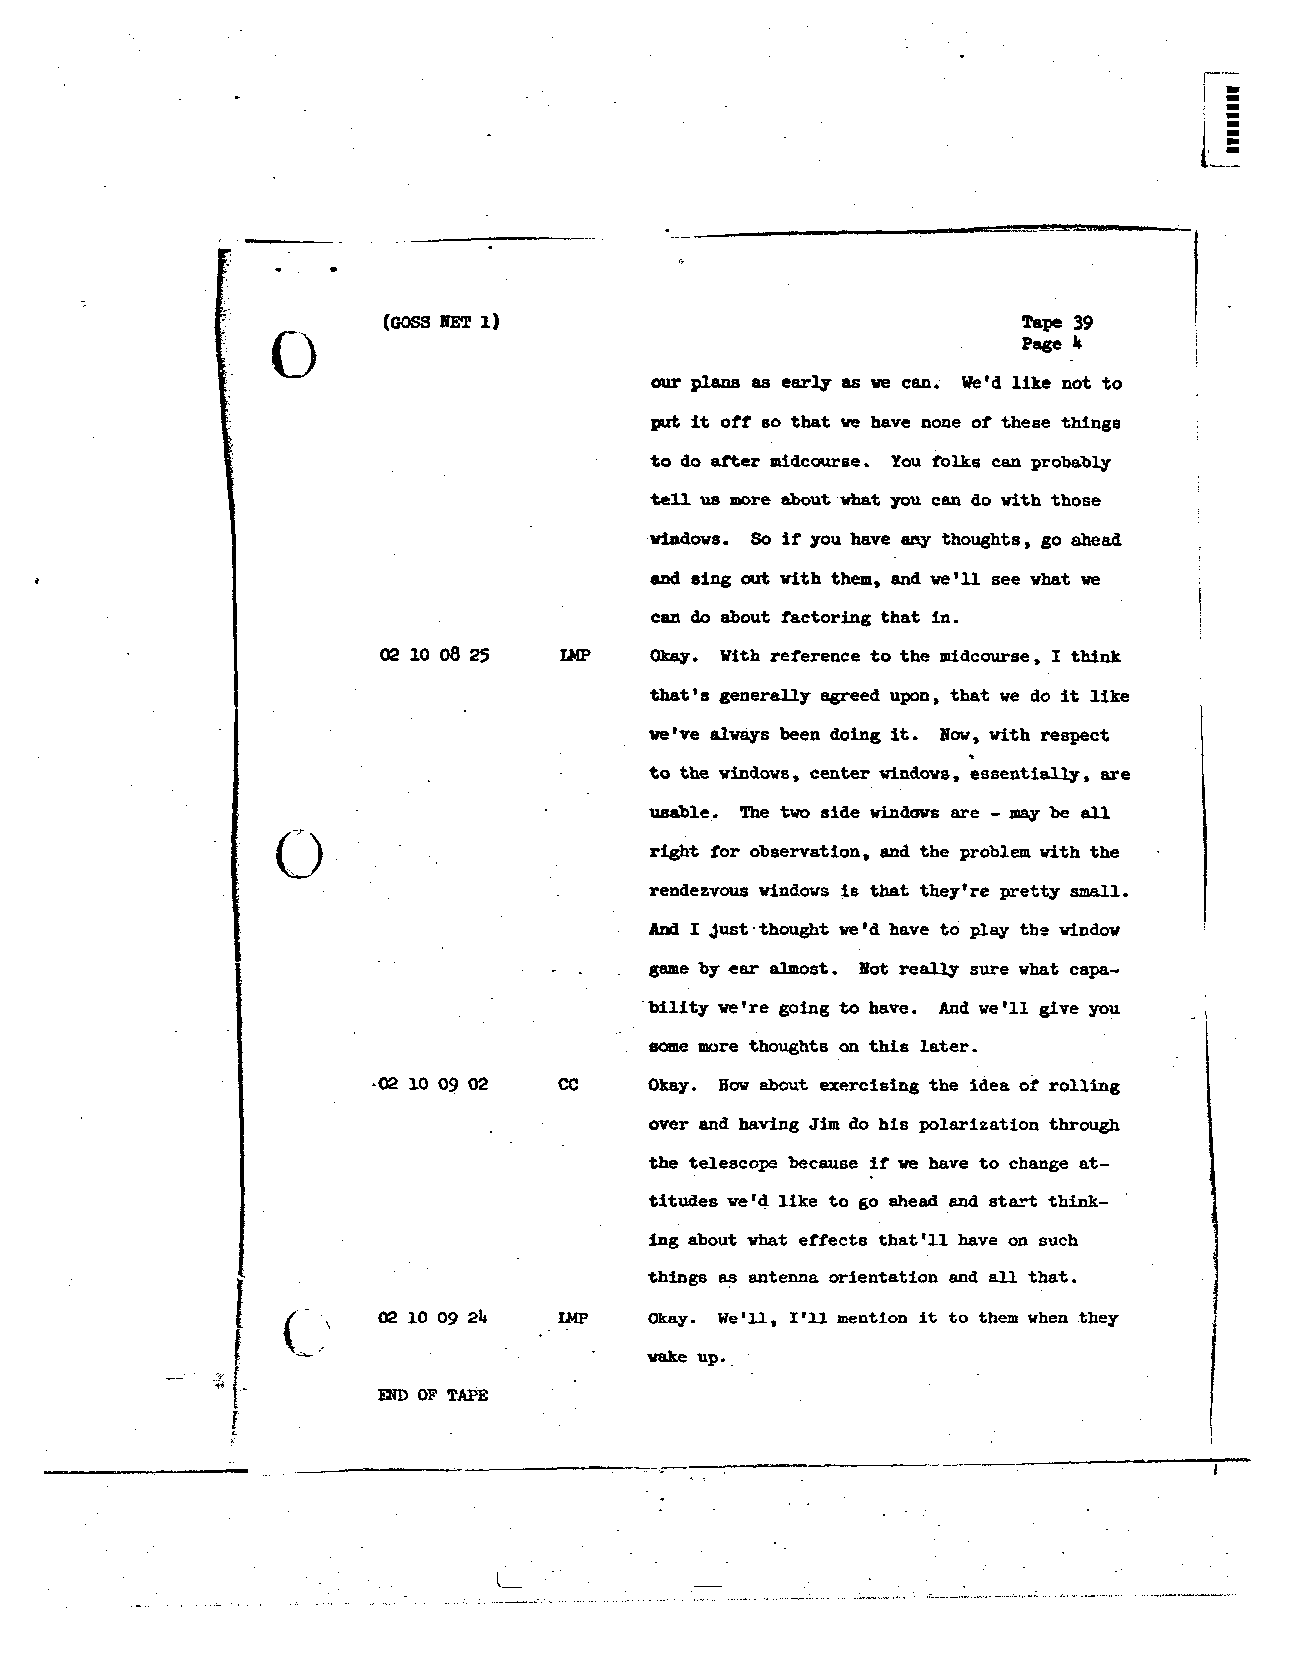 Page 306 of Apollo 8’s original transcript